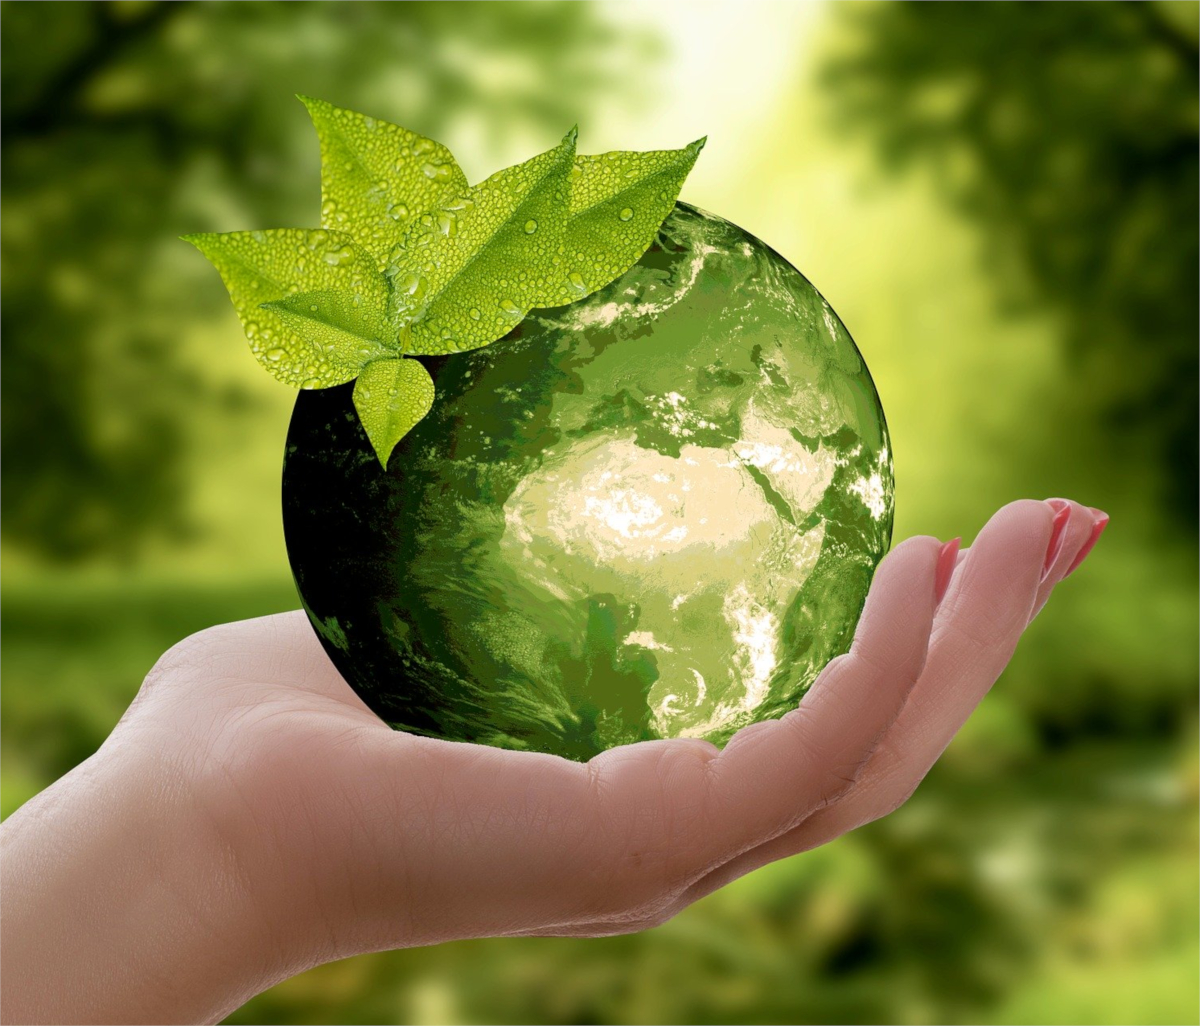 Image d'un globe terrestre vert - écoconception, eco-design